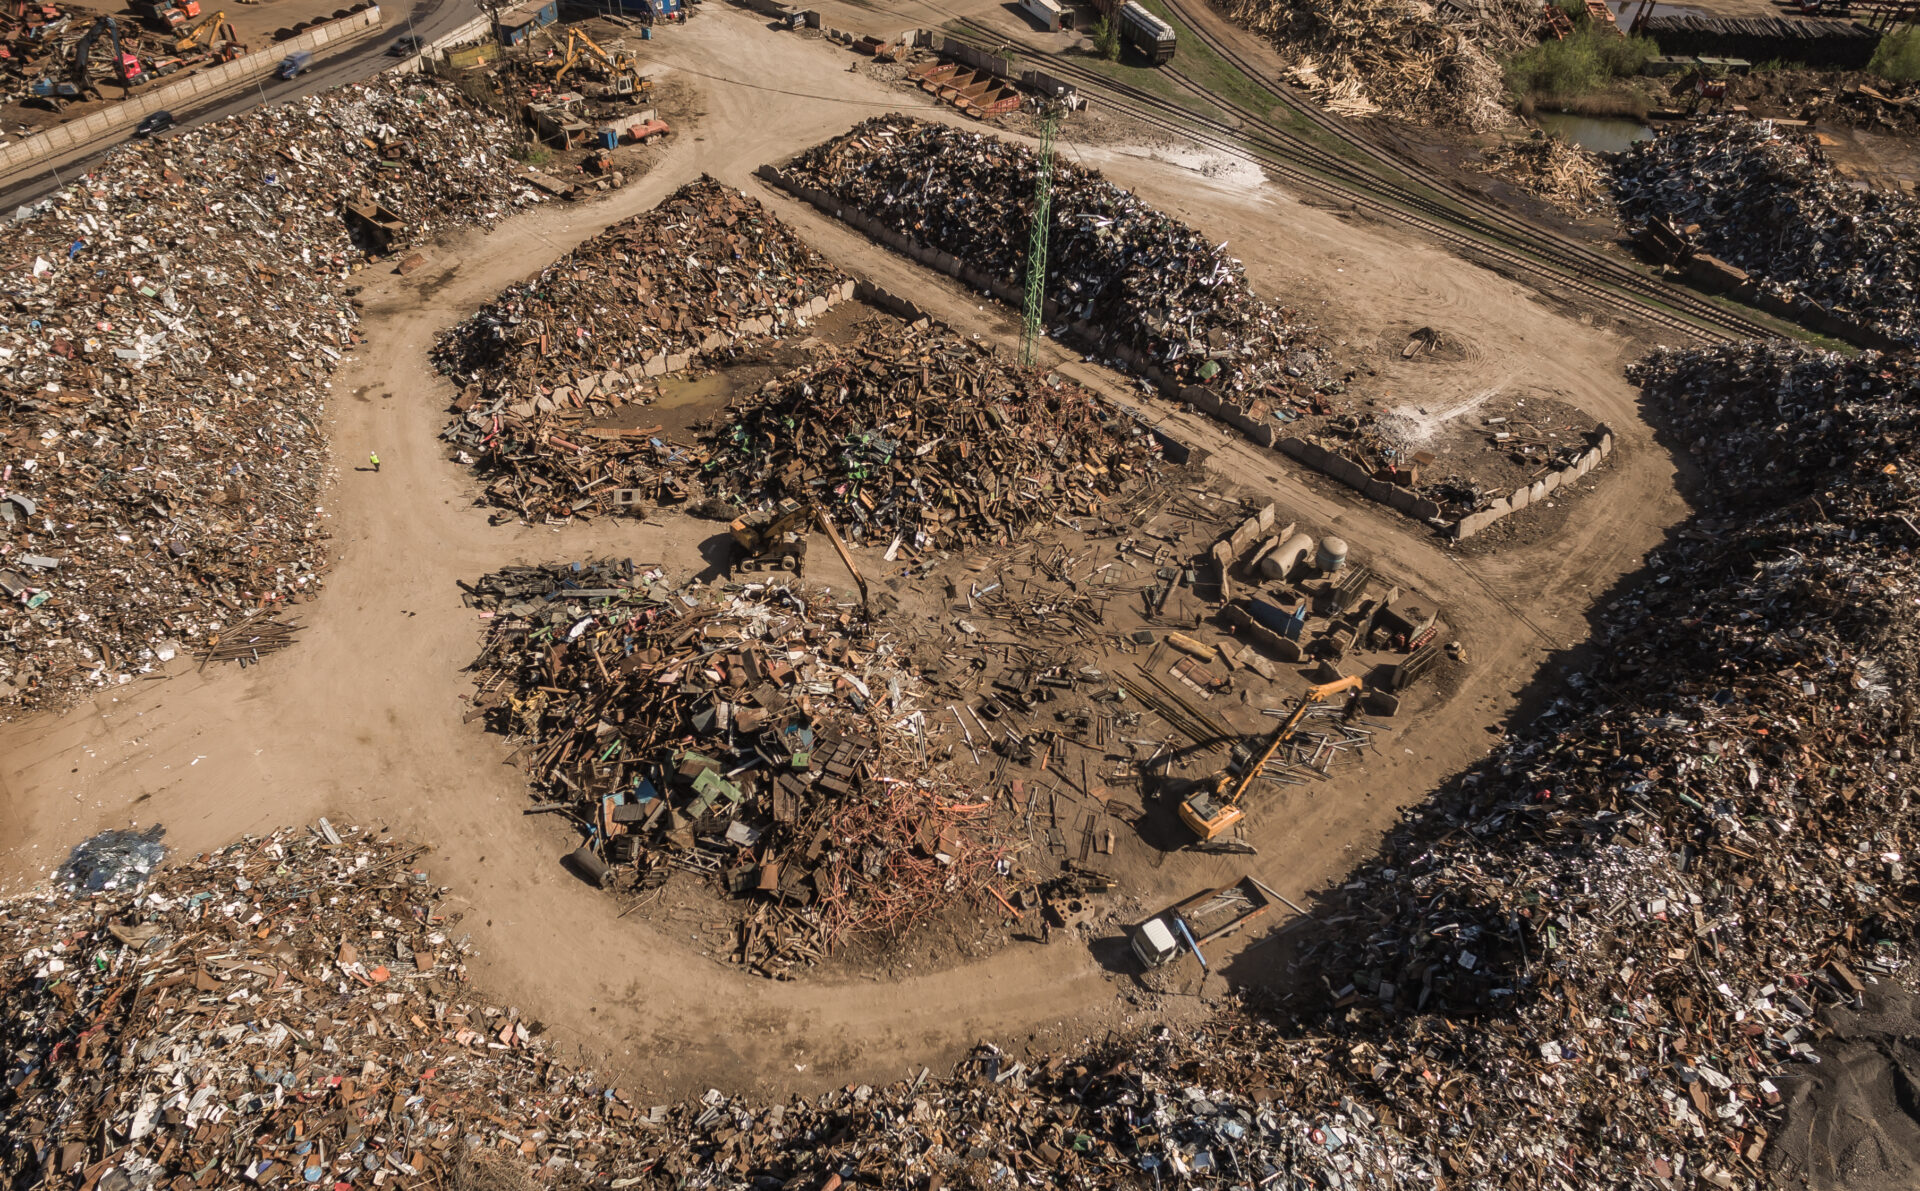 Dumping site that is sorting scrap metal